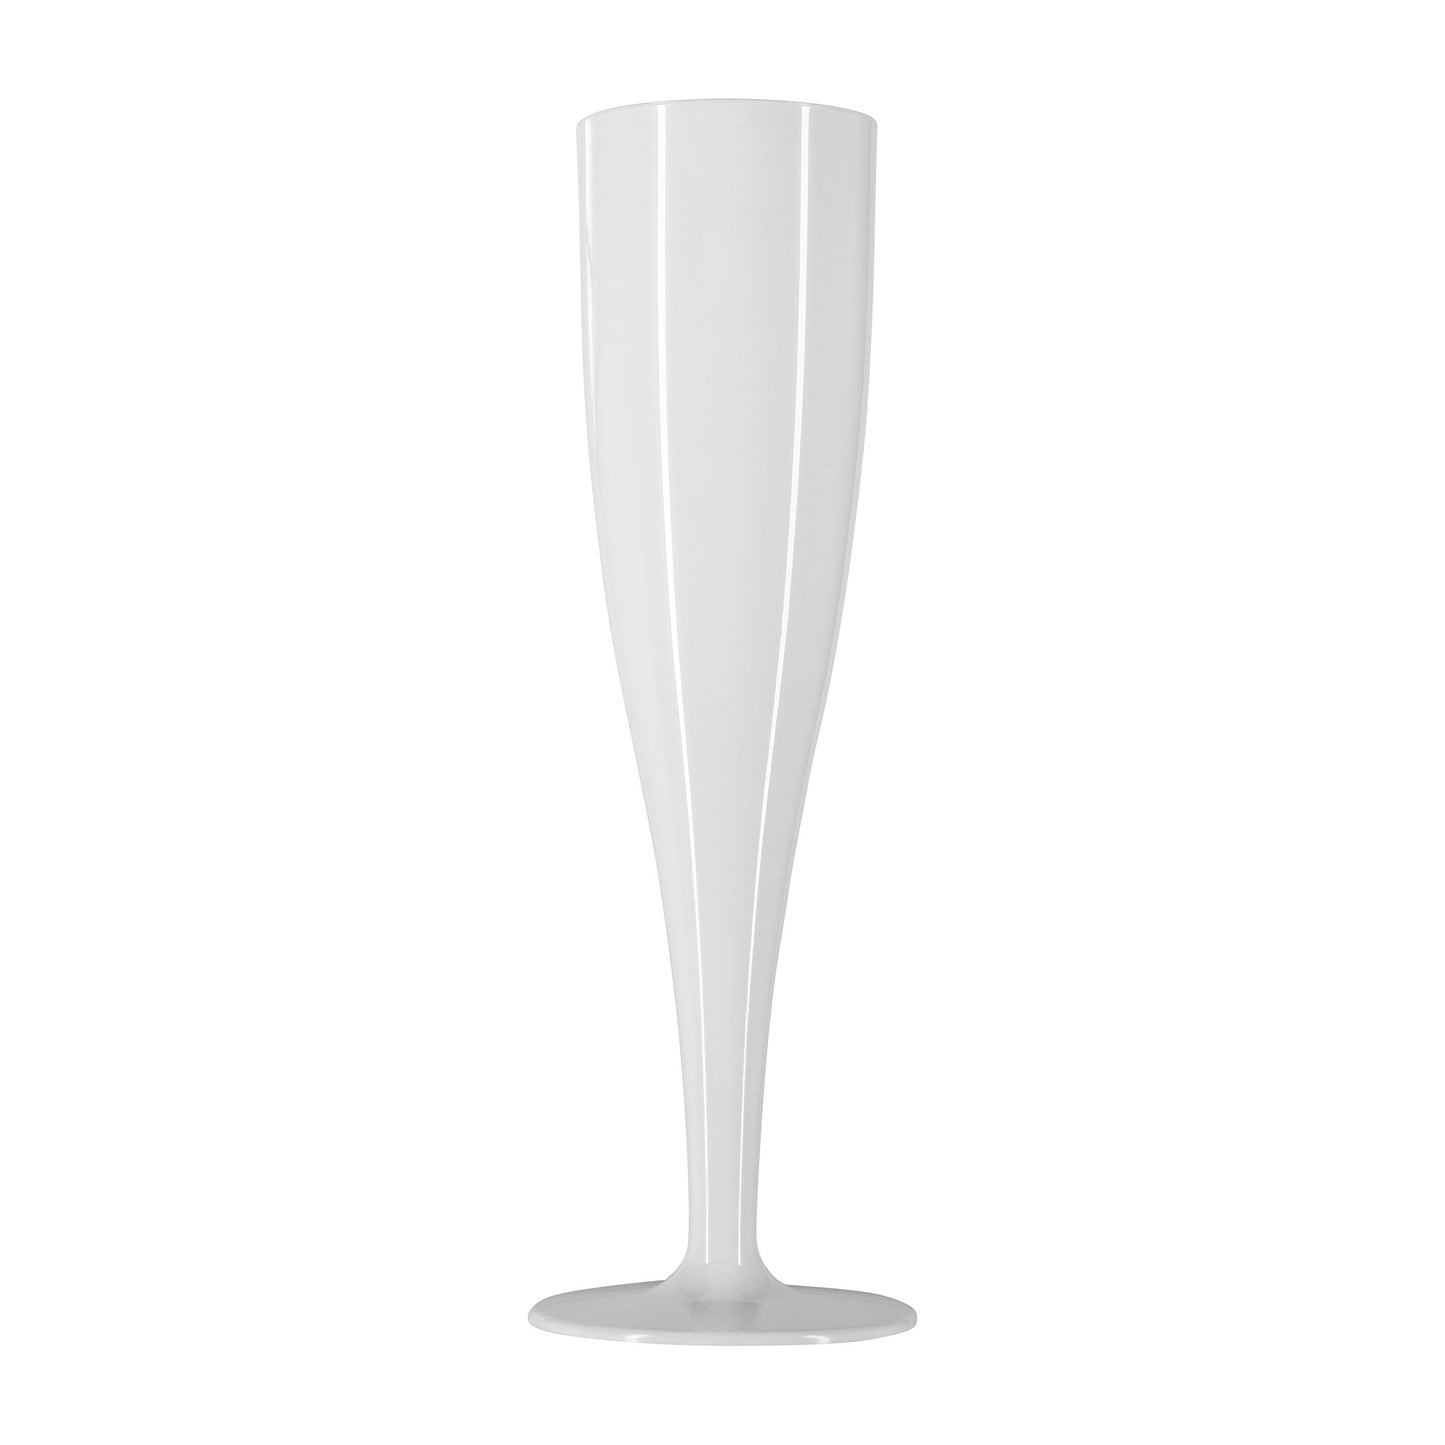 50 x White Biodegradable Plastic Prosecco Flutes 175ml 6oz